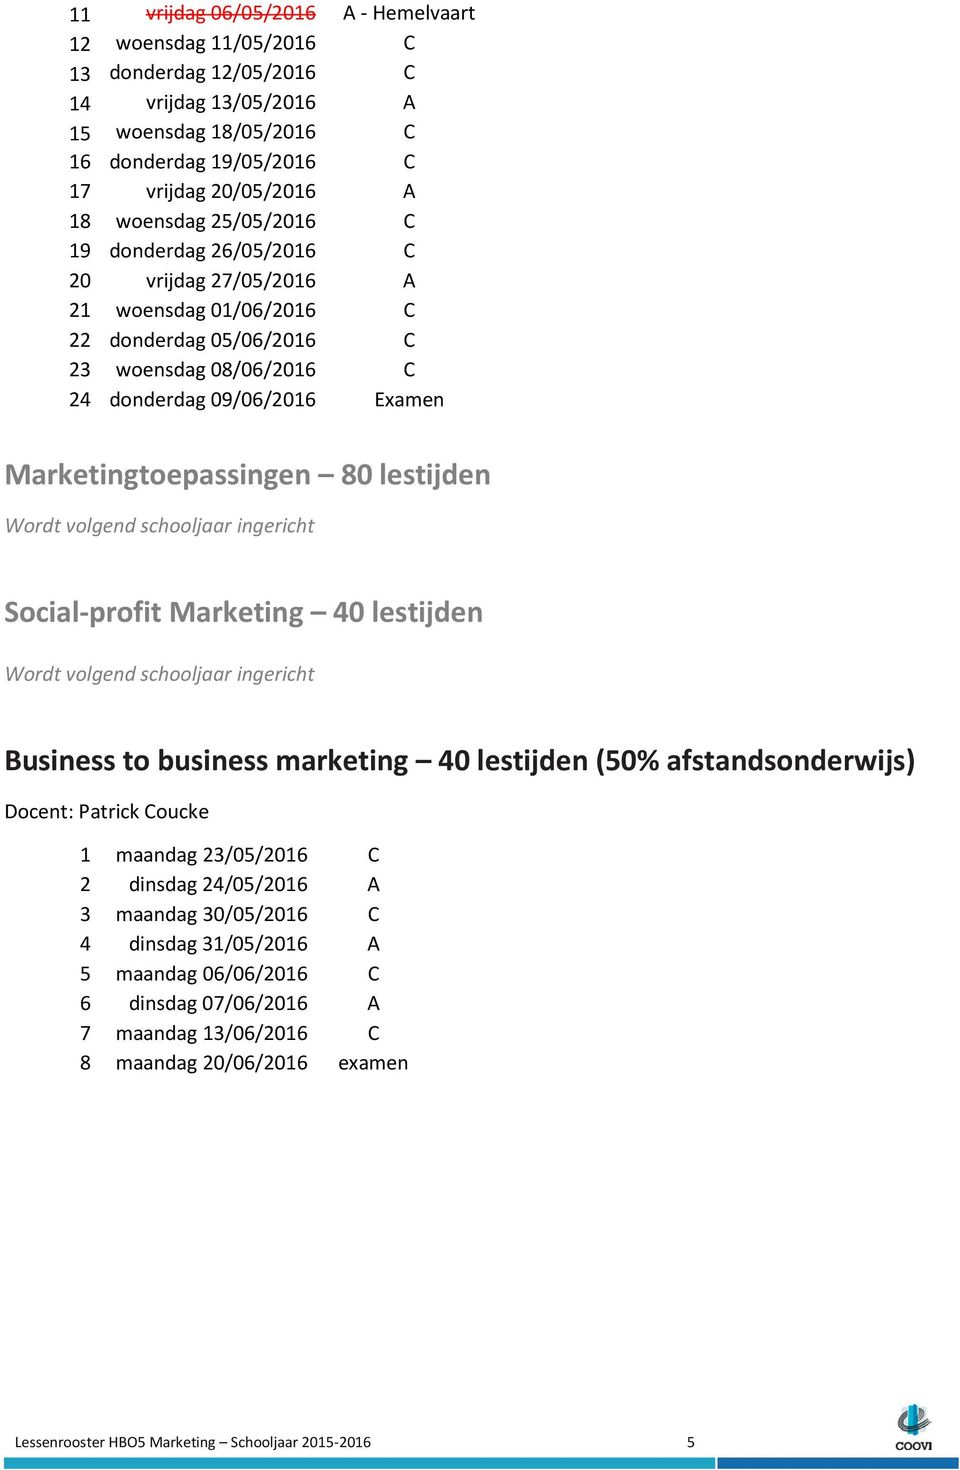 Marketingtoepassingen 80 lestijden Social-profit Marketing 40 lestijden Business to business marketing 40 lestijden (50% afstandsonderwijs) Docent: Patrick Coucke 1 maandag 23/05/2016 C 2